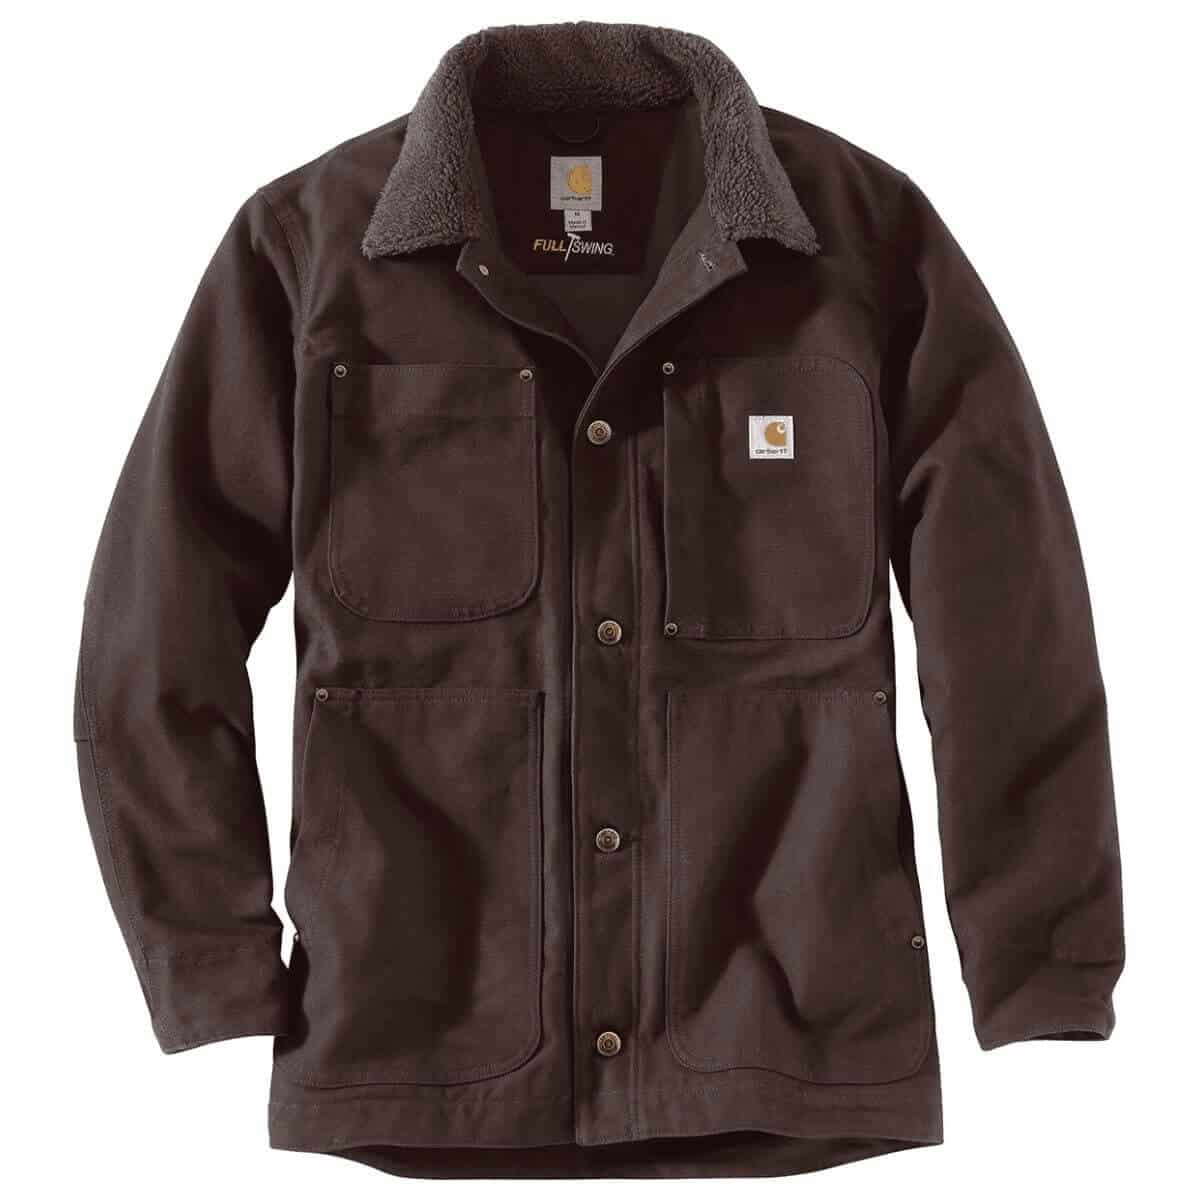 Carhartt brown chore coat.